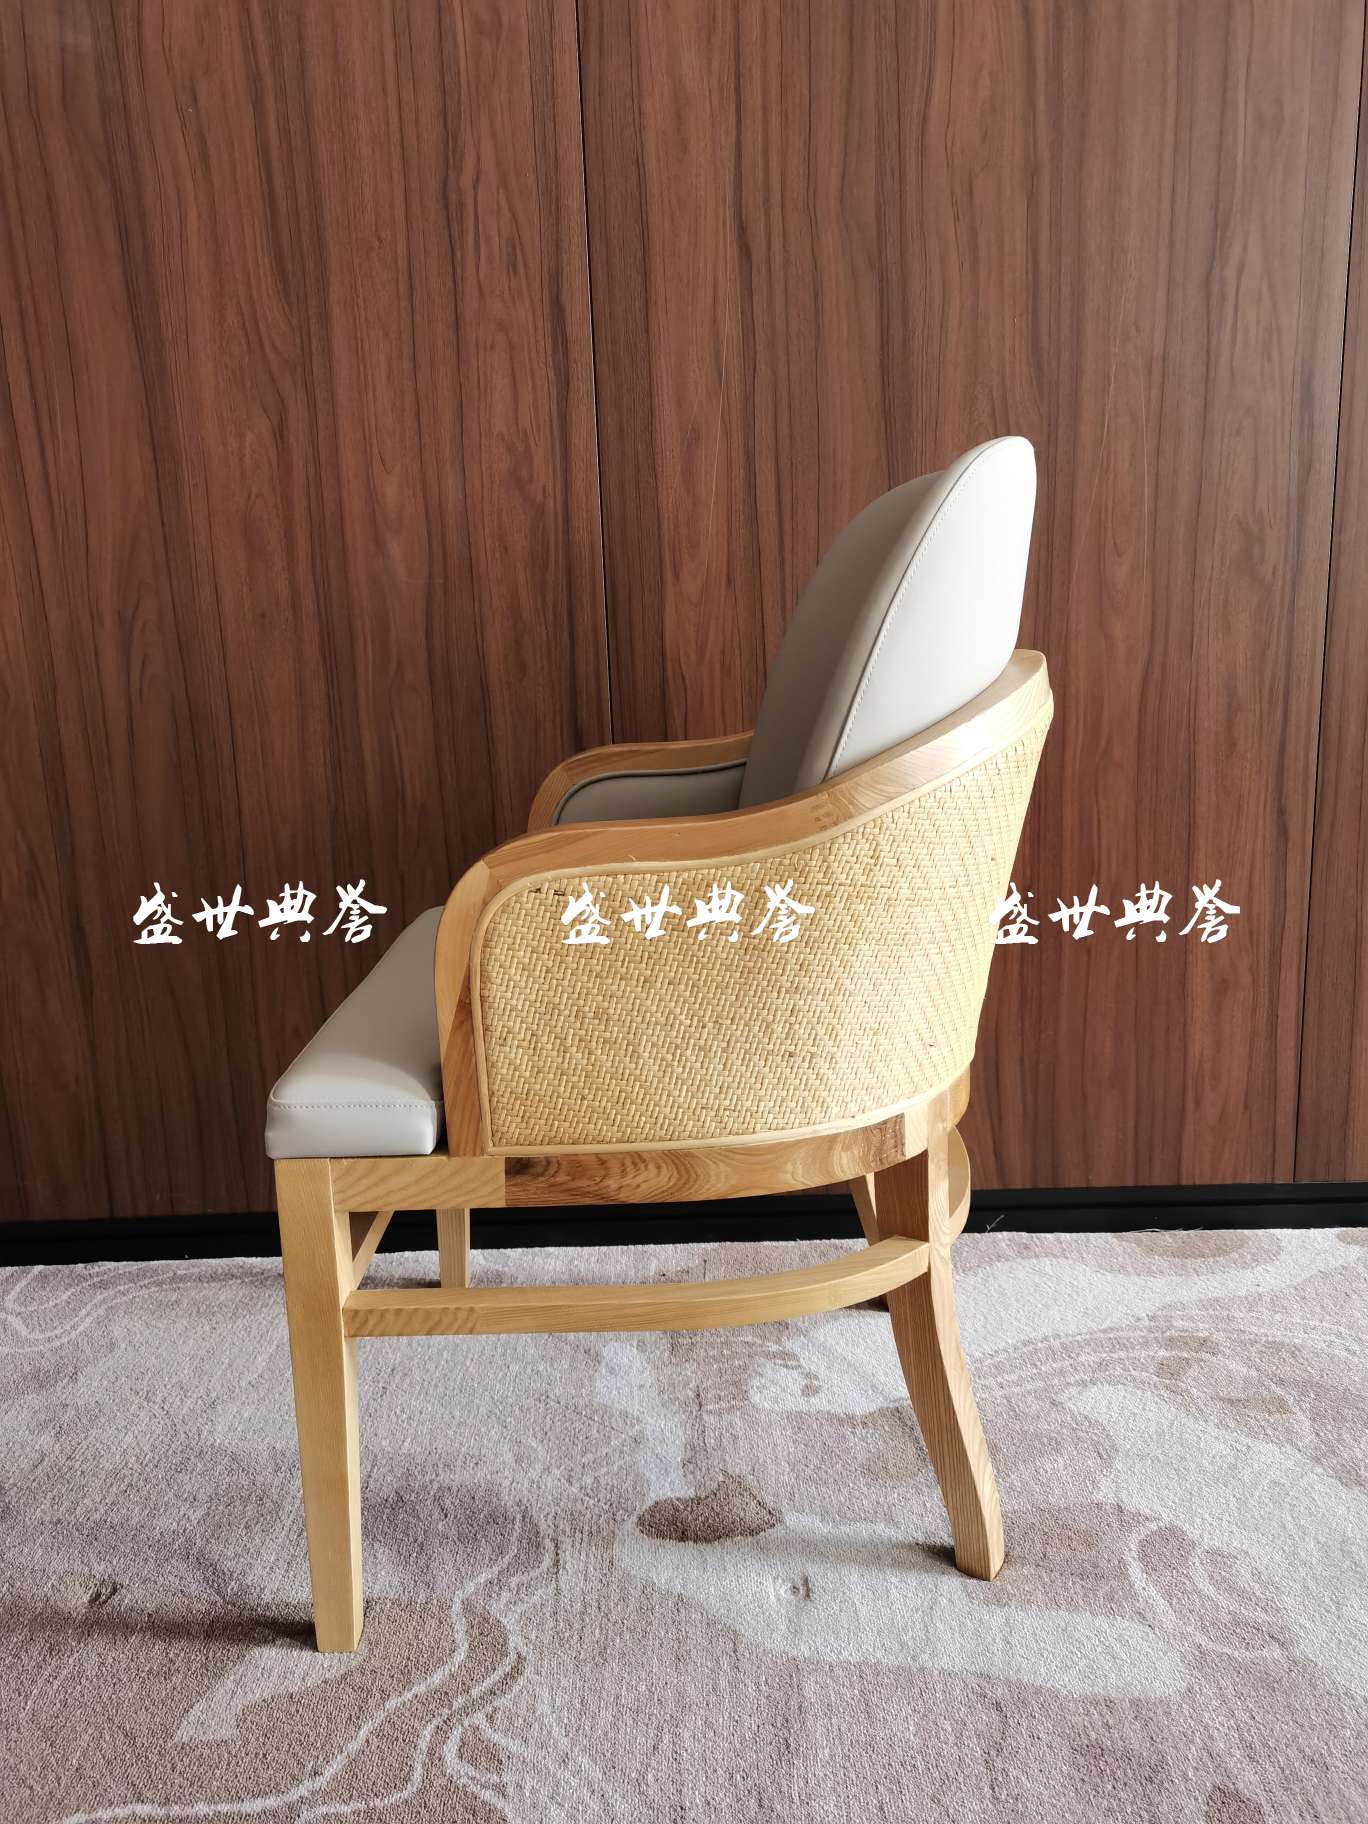 上海星级酒店实木餐桌椅国际大饭店包厢实木藤编椅子白蜡木扶手藤椅详情图3